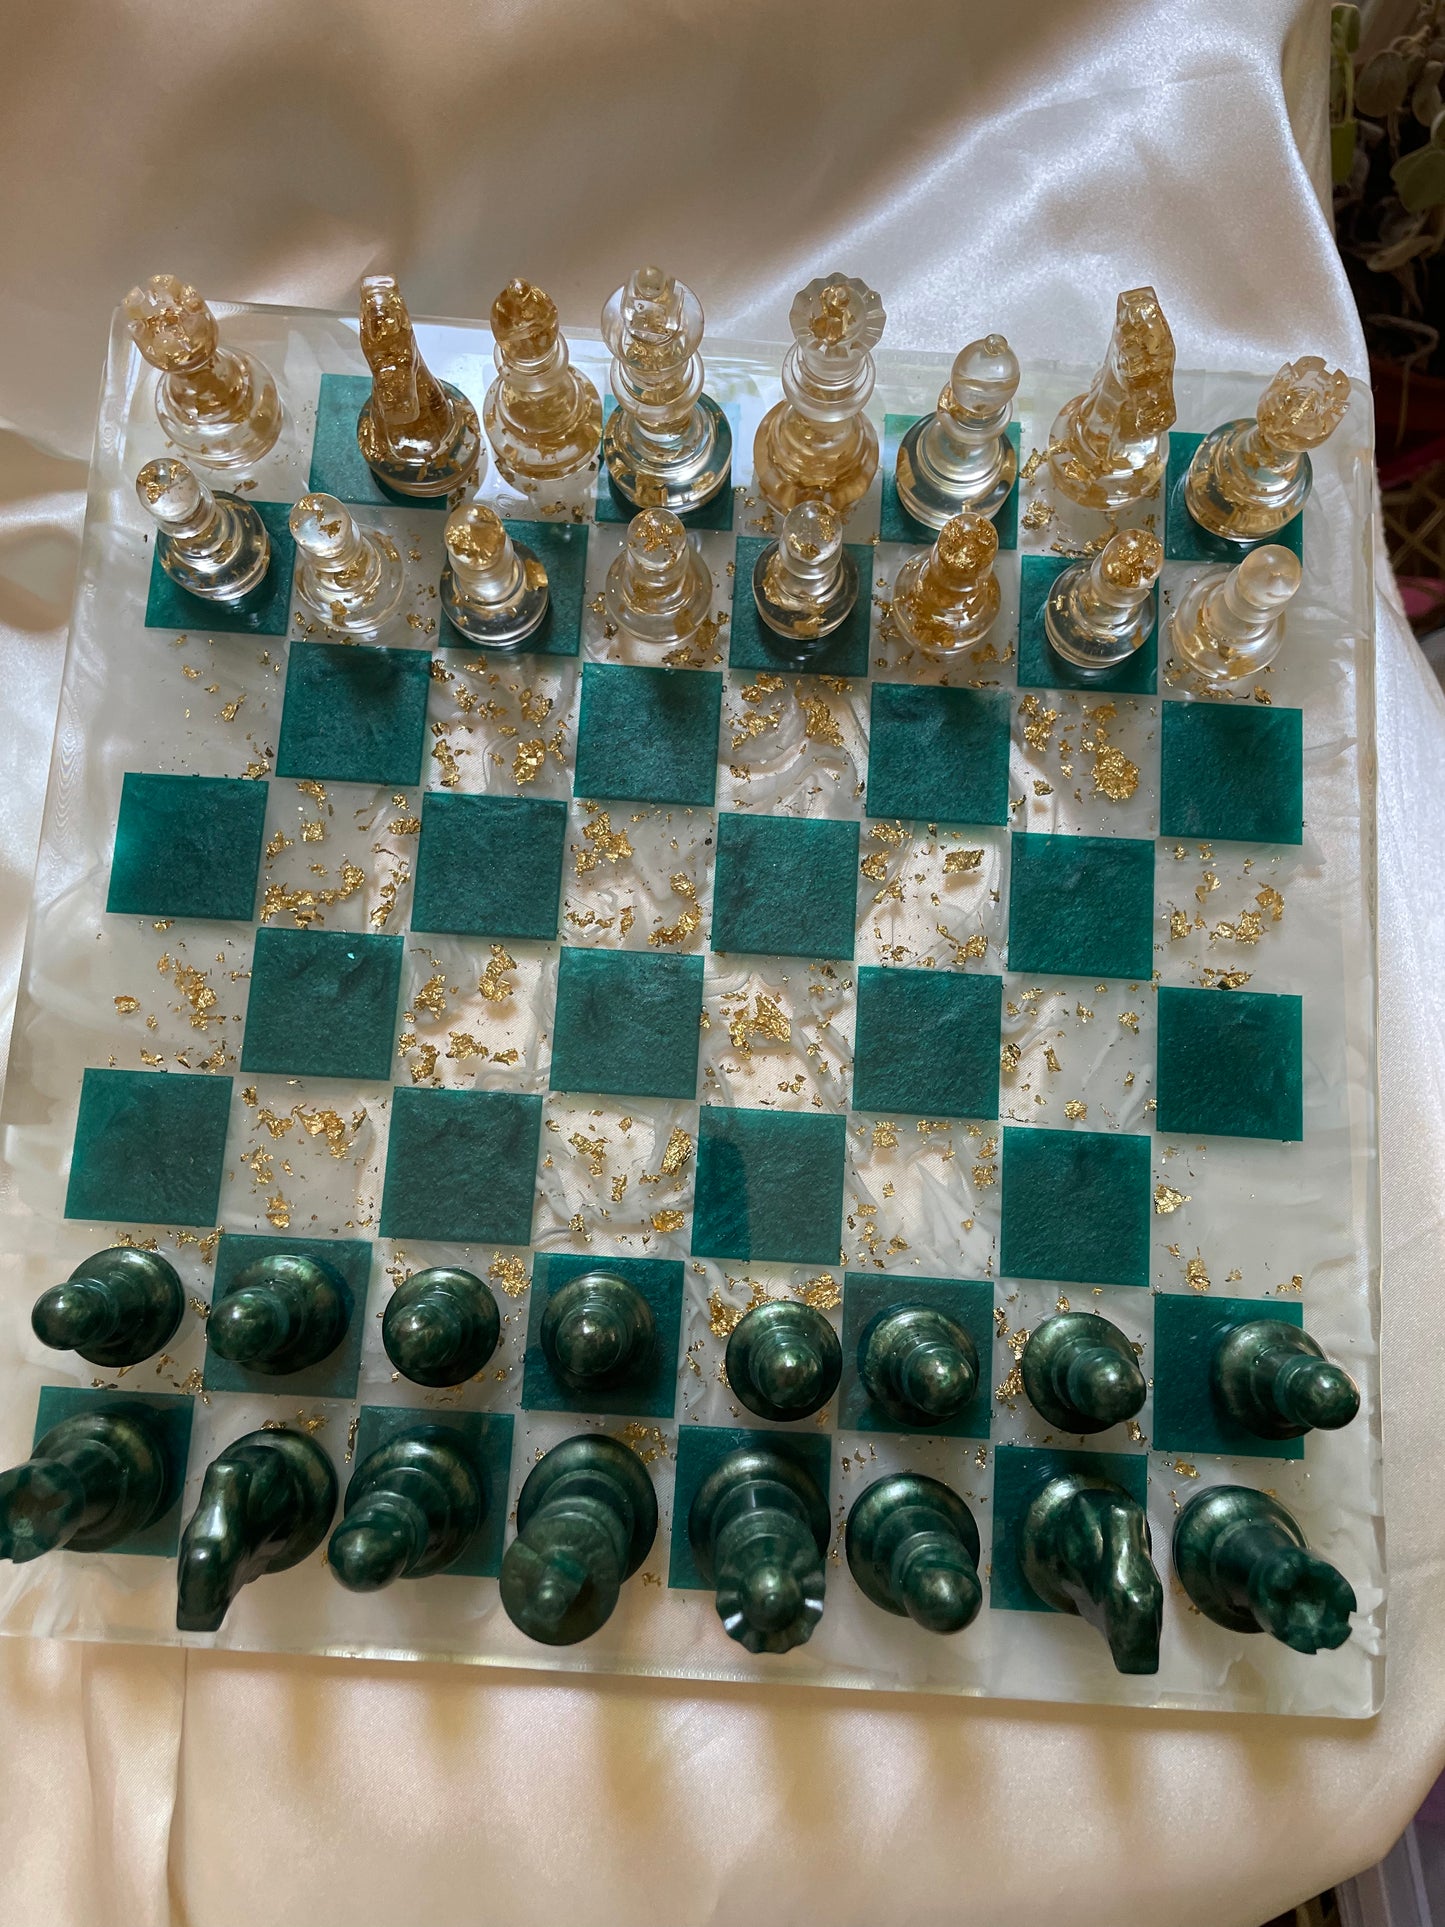 Tablero de ajedrez de mármol verde esmeralda y oro.